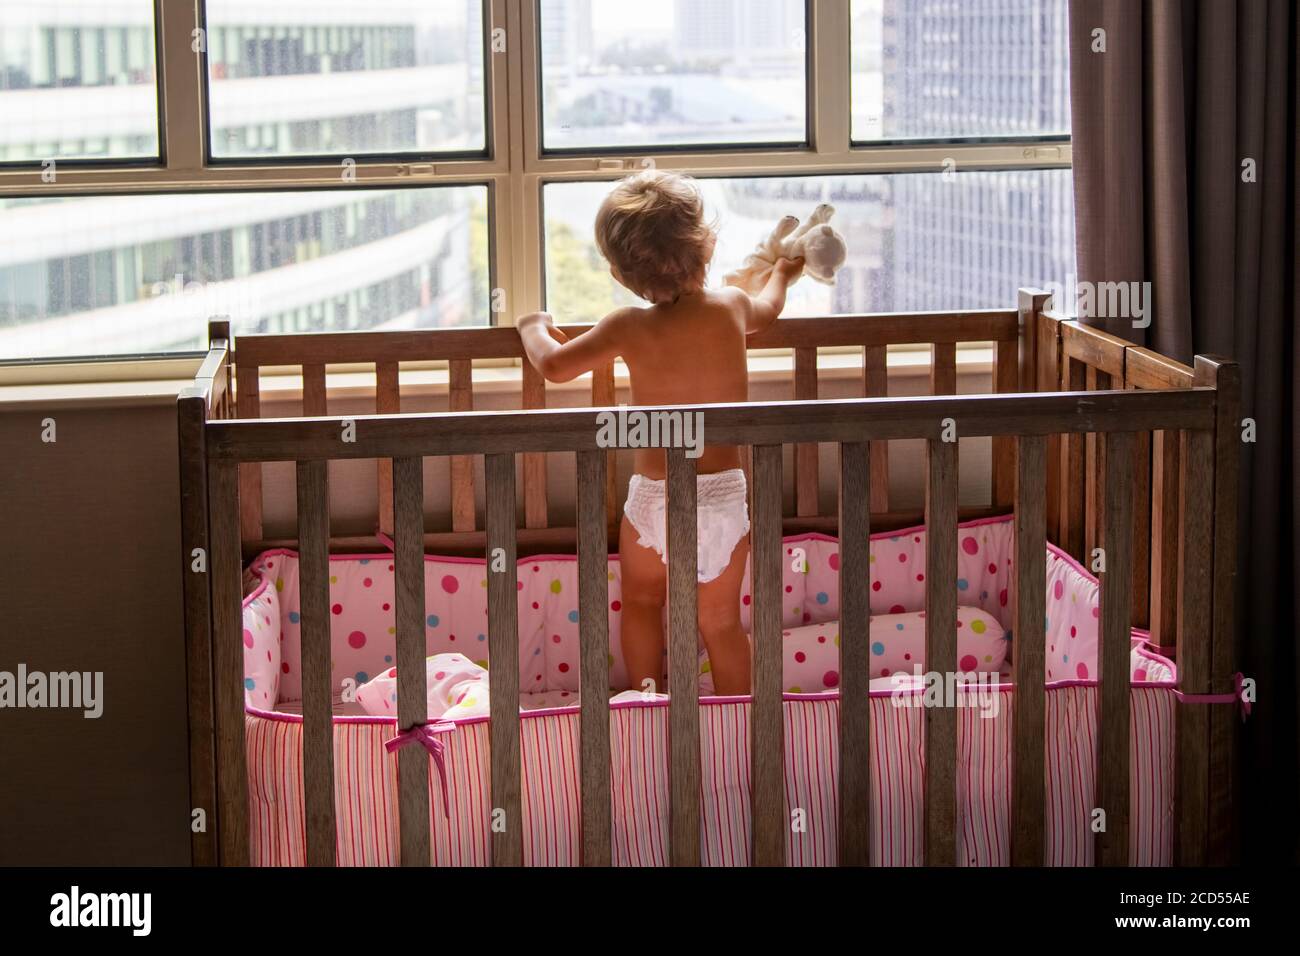 concepto de estancia en casa. niño pequeño con gato de juguete está parado en la cuna y mirando por la ventana a los rascacielos de la ciudad Foto de stock